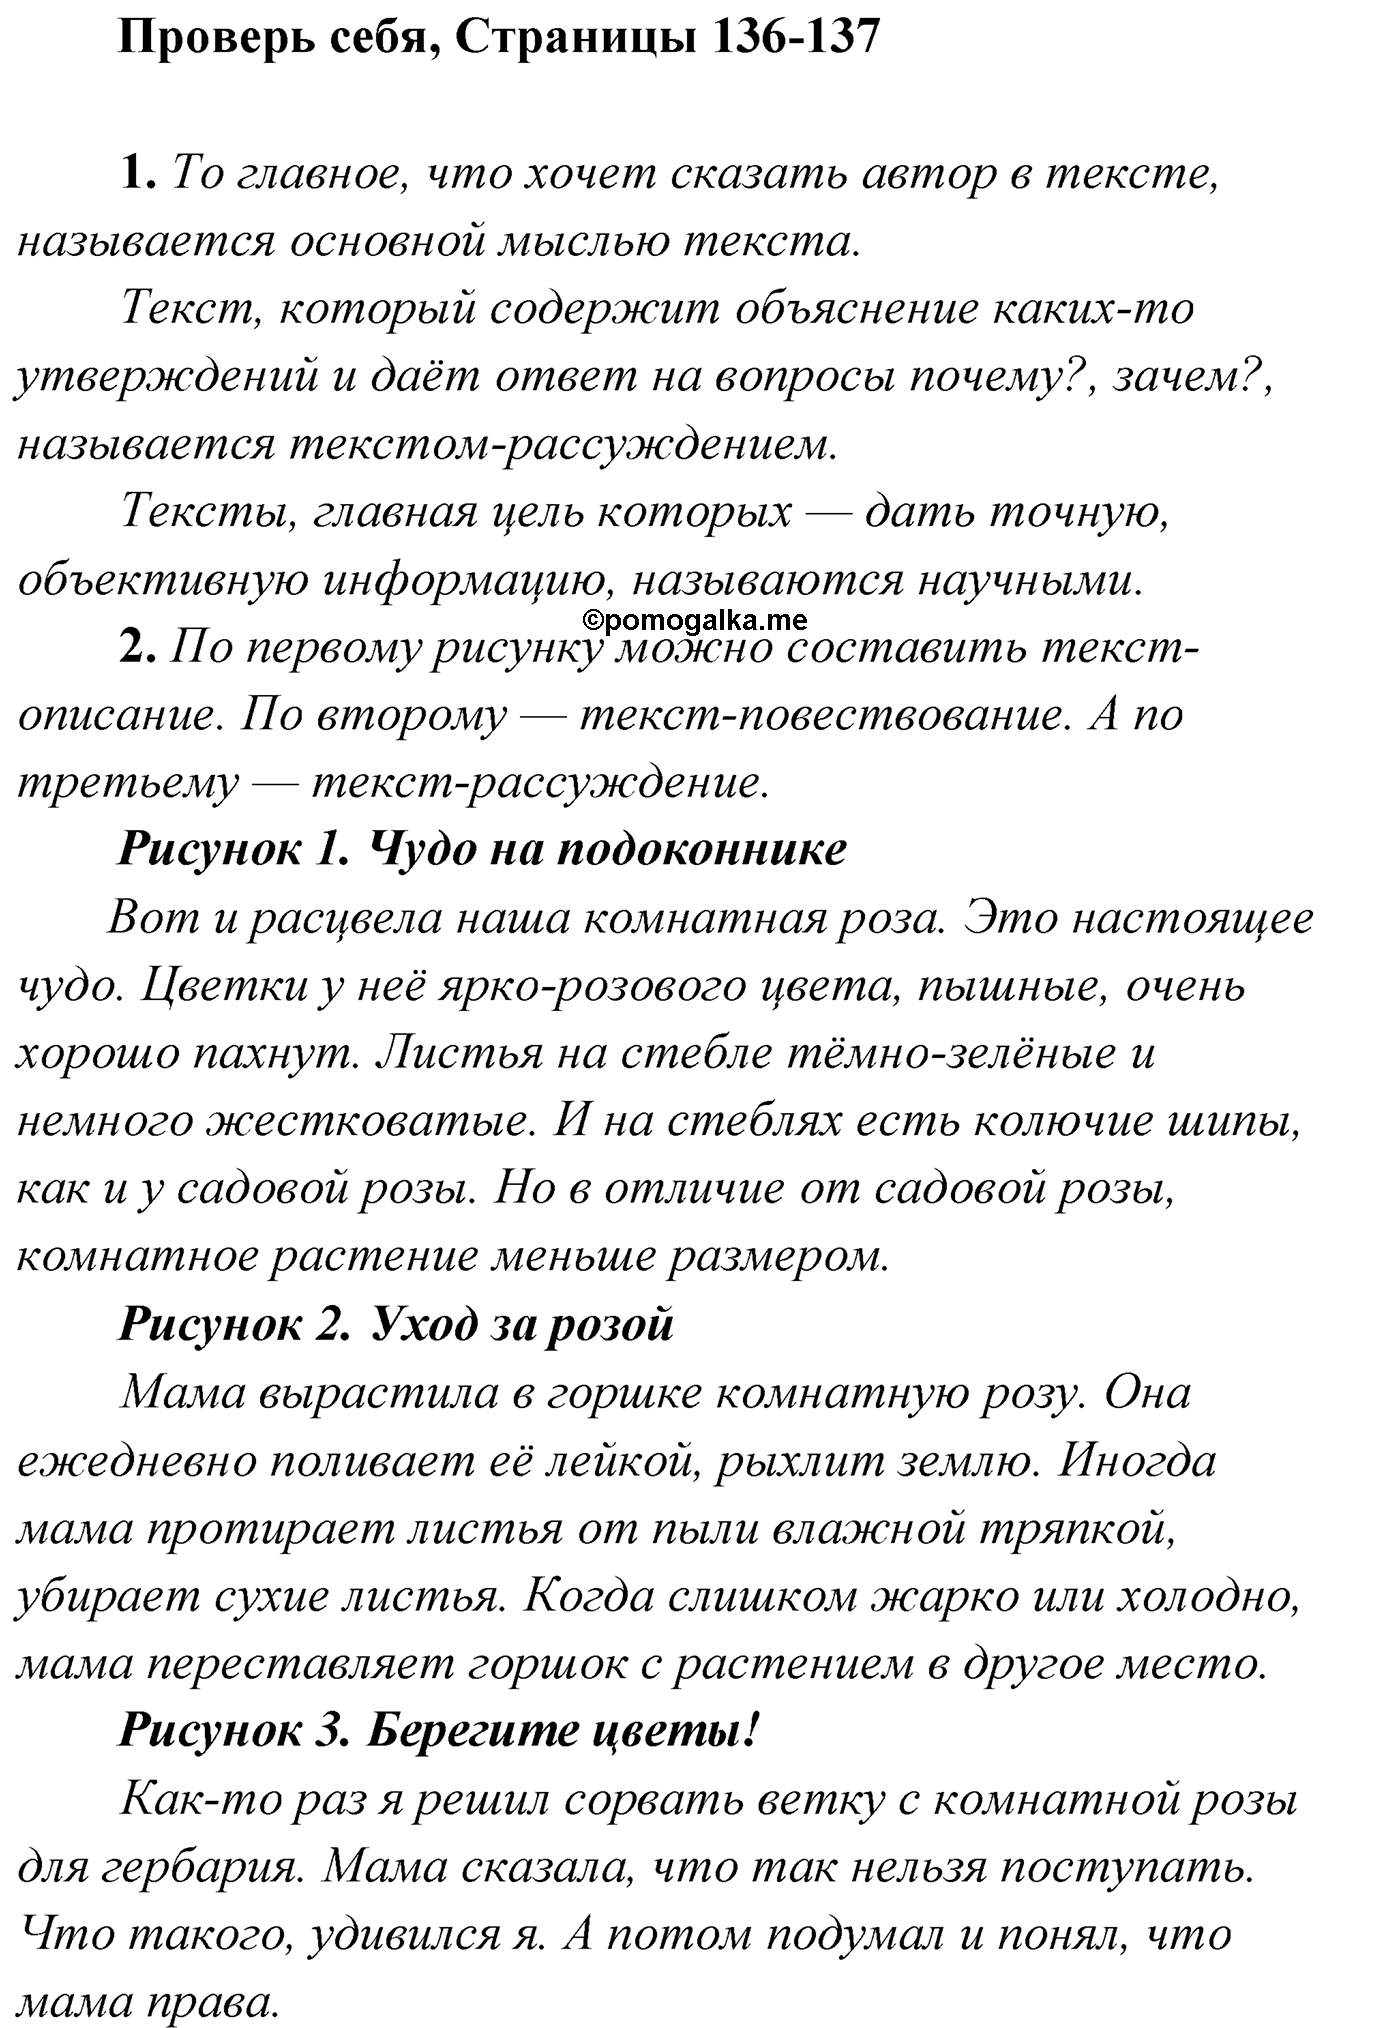 Страница 136-137, Проверь себя русский язык 4 класс Климанова 2022 год